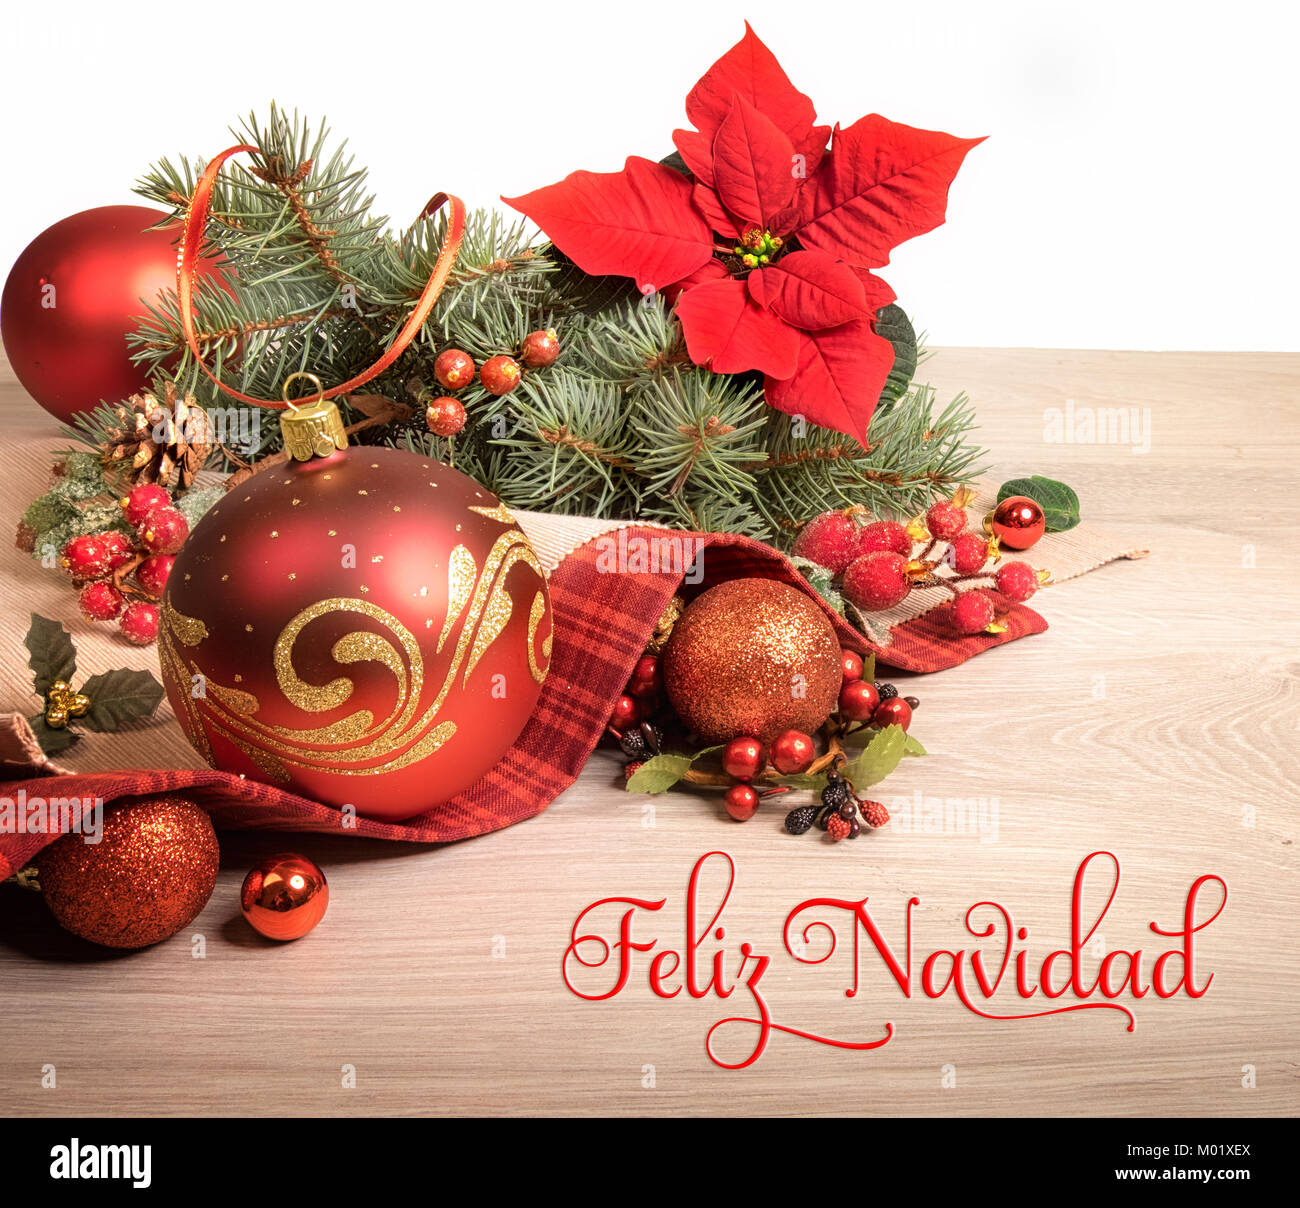 Fond de bois avec poinsettia et arbre de Noël décoré de brindilles, de texte sur l'image signifie 'Merry Christmas' en espagnol. Banque D'Images